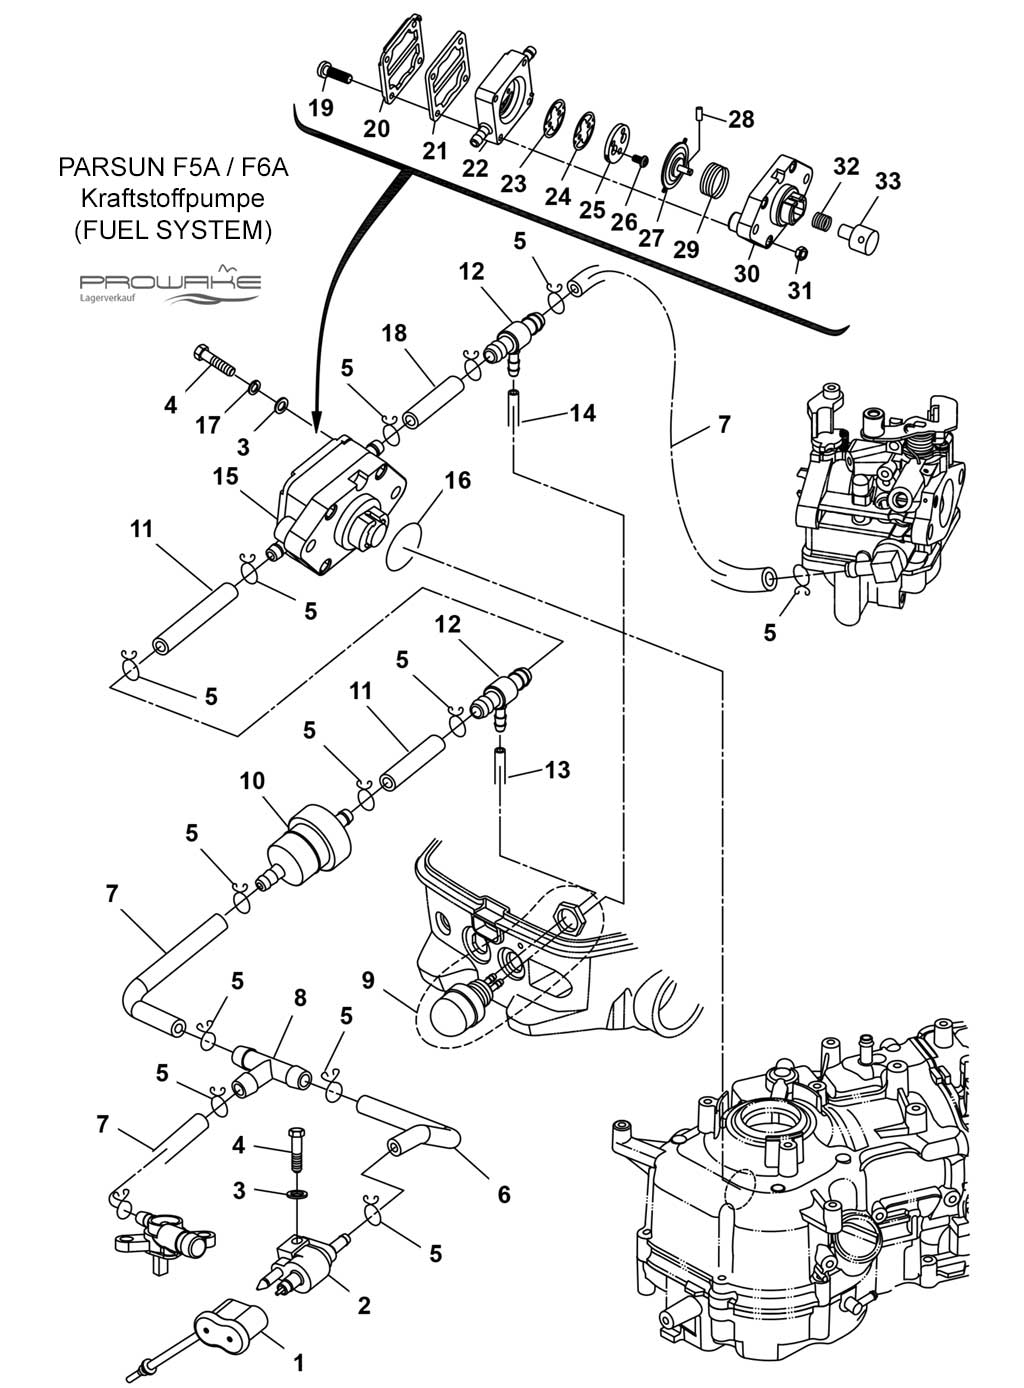 Parsun F6A  Ersatzteile / Spare Parts: Treibstoff